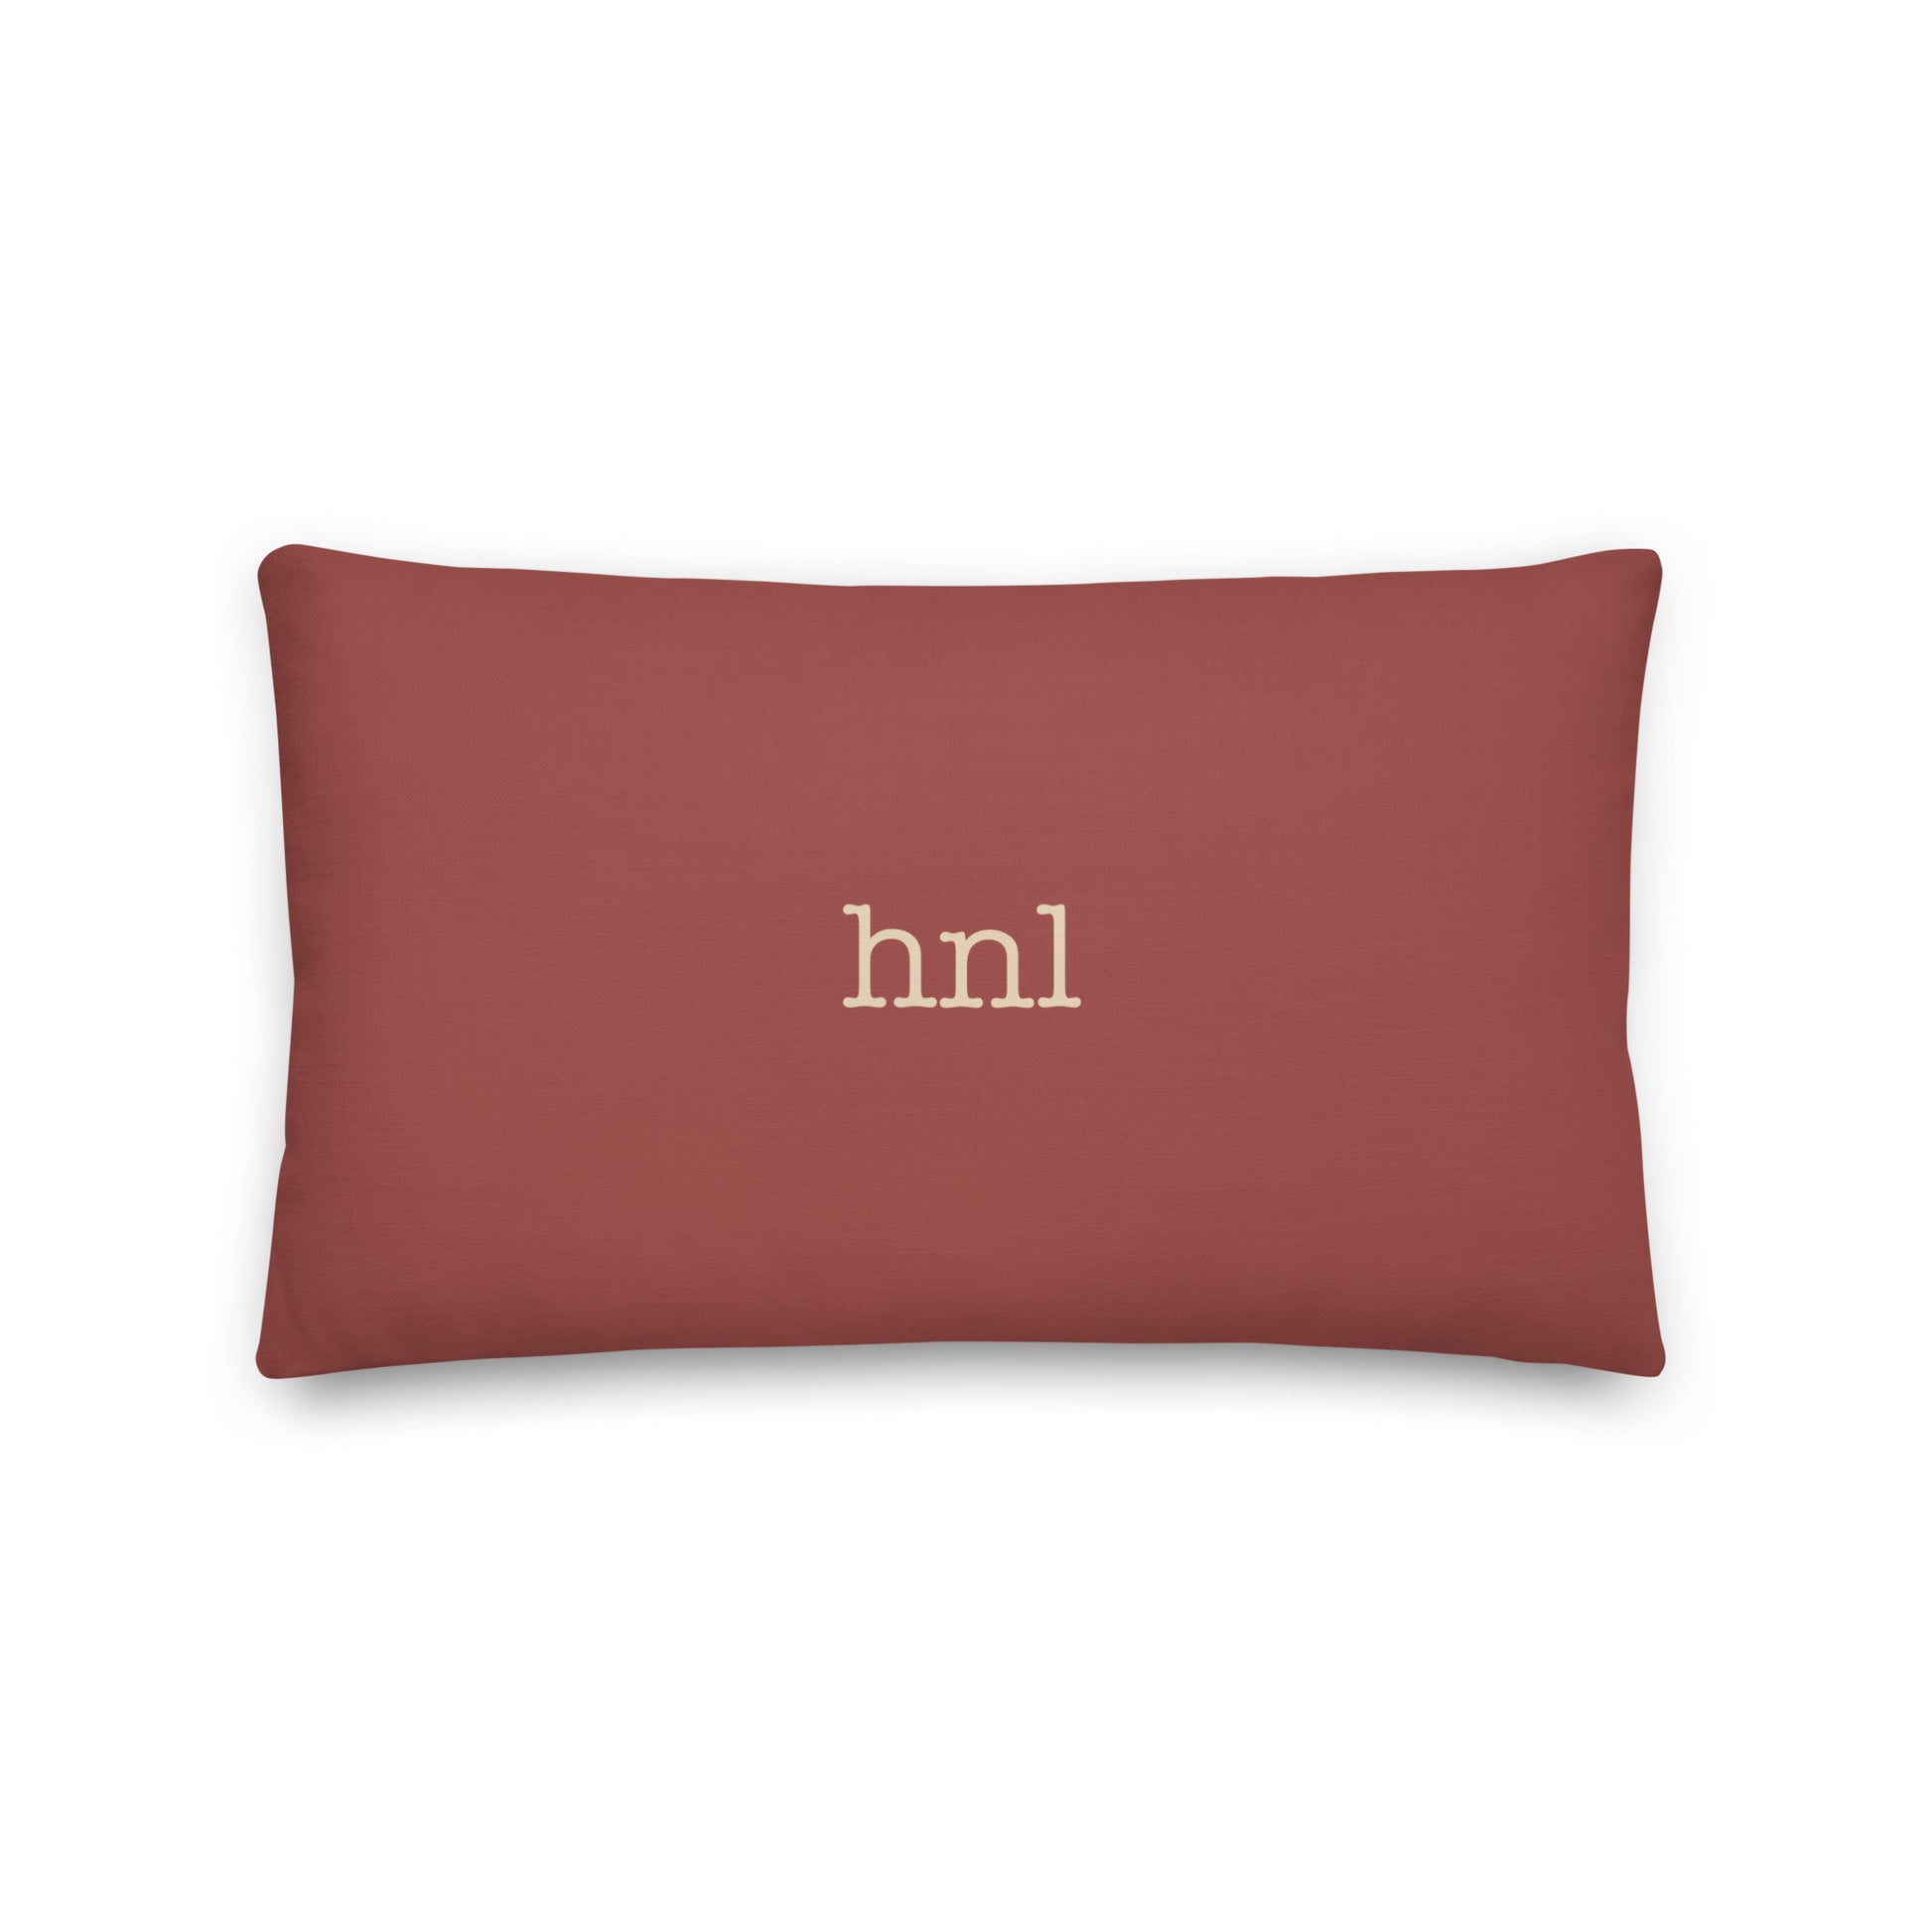 Typewriter Pillow - Terra Cotta • HNL Honolulu • YHM Designs - Image 02